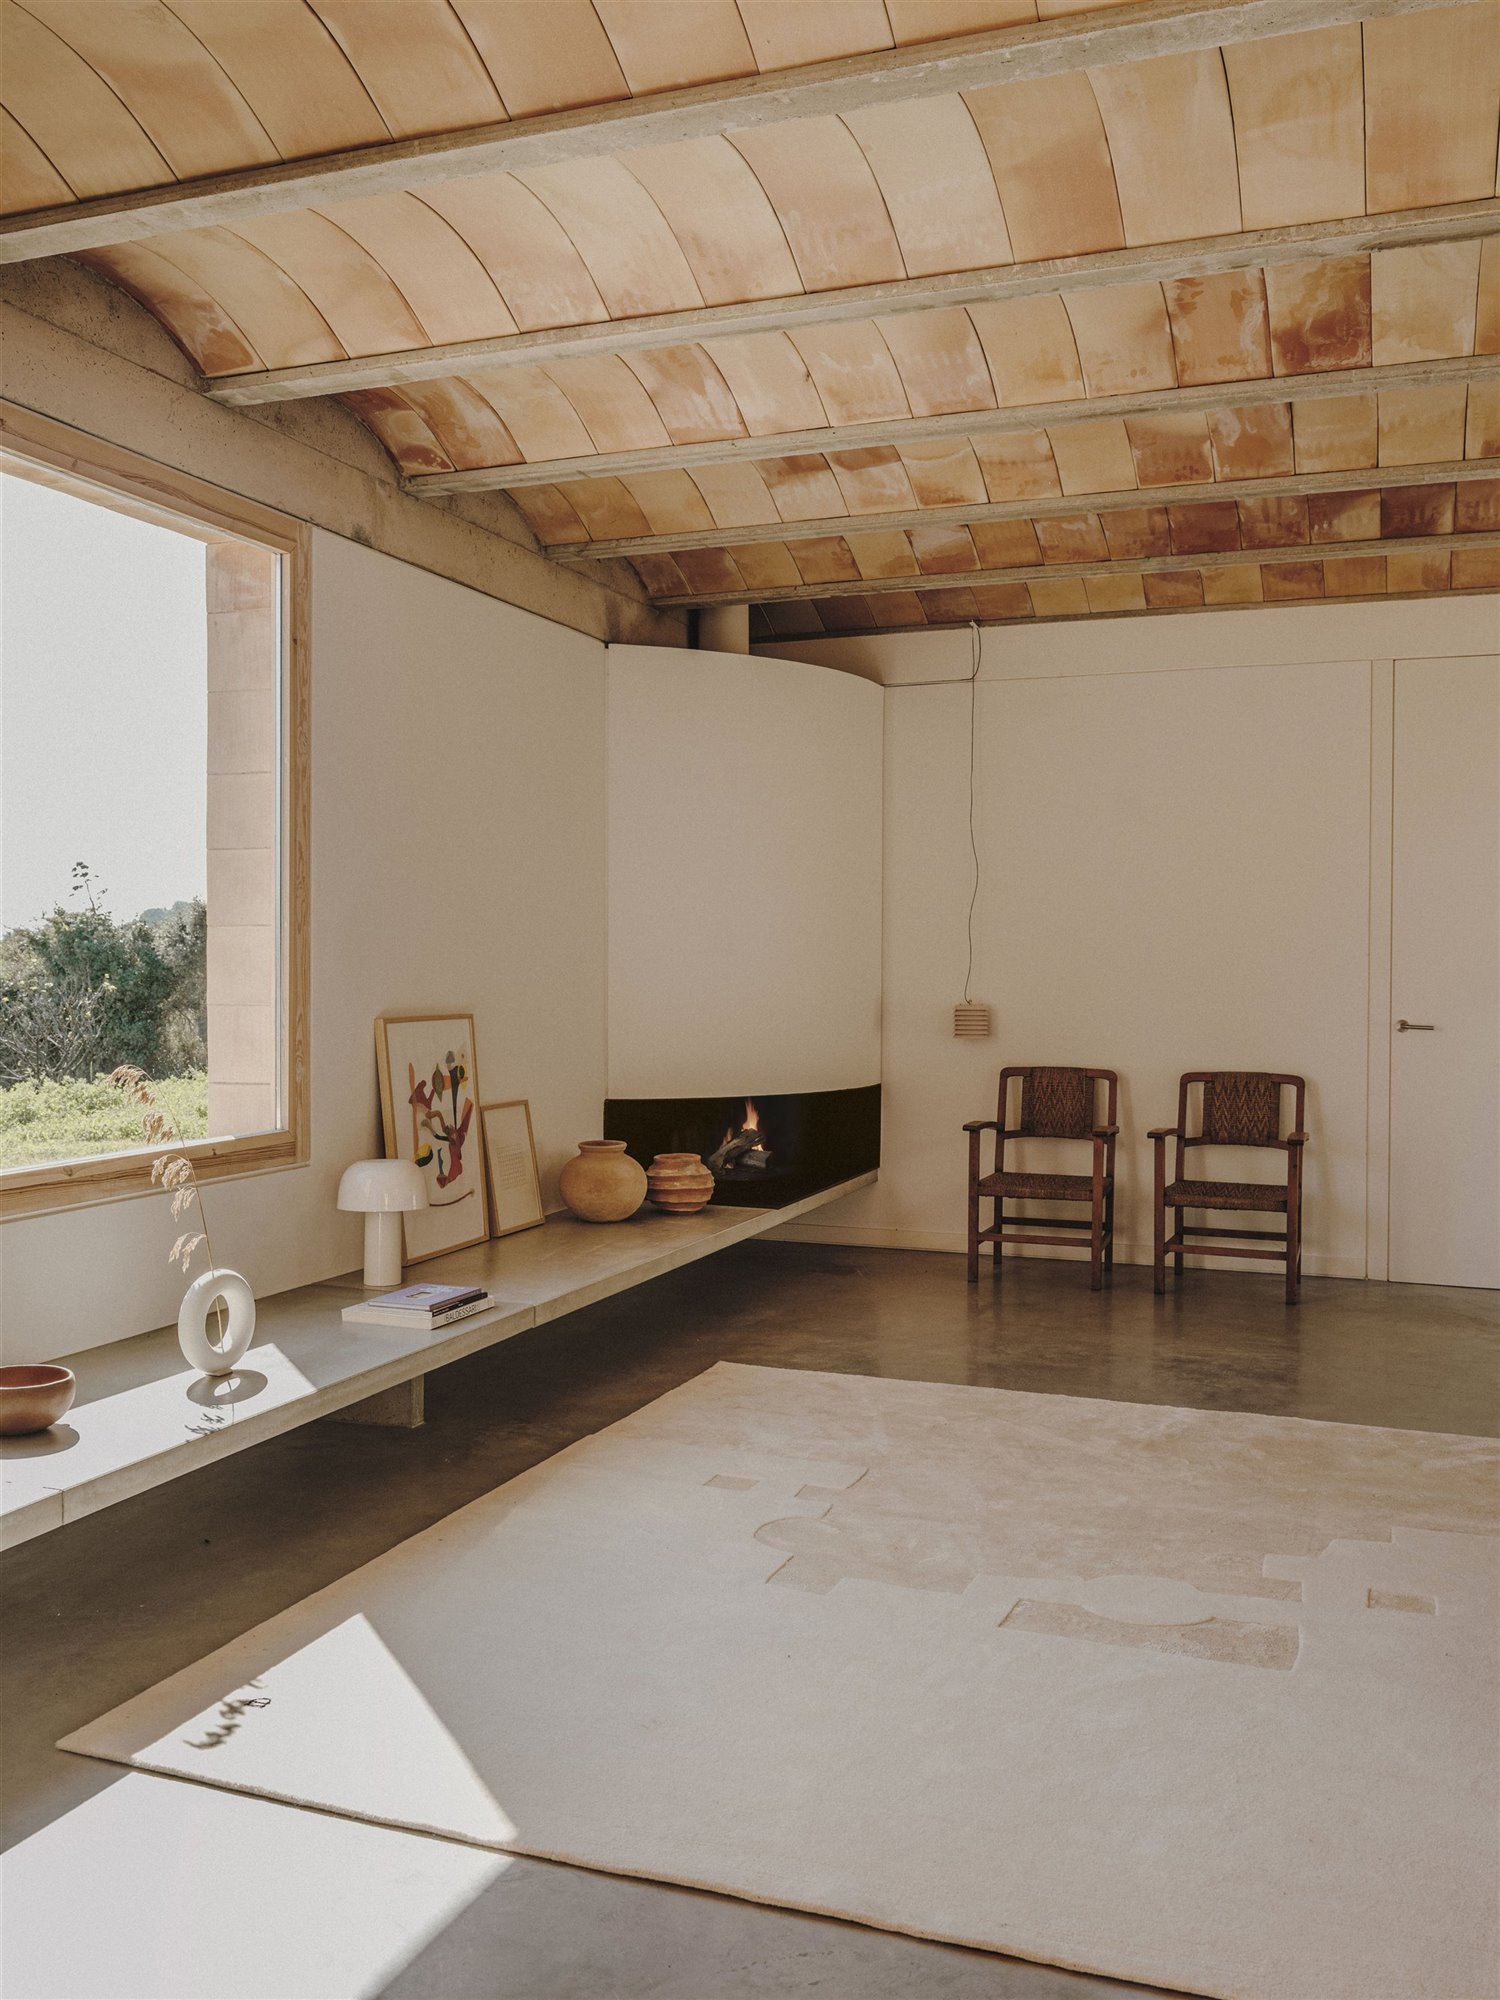 Casa moderna en el campo del estudio de arquitectura Mesura salon con chimenea de ladrillo